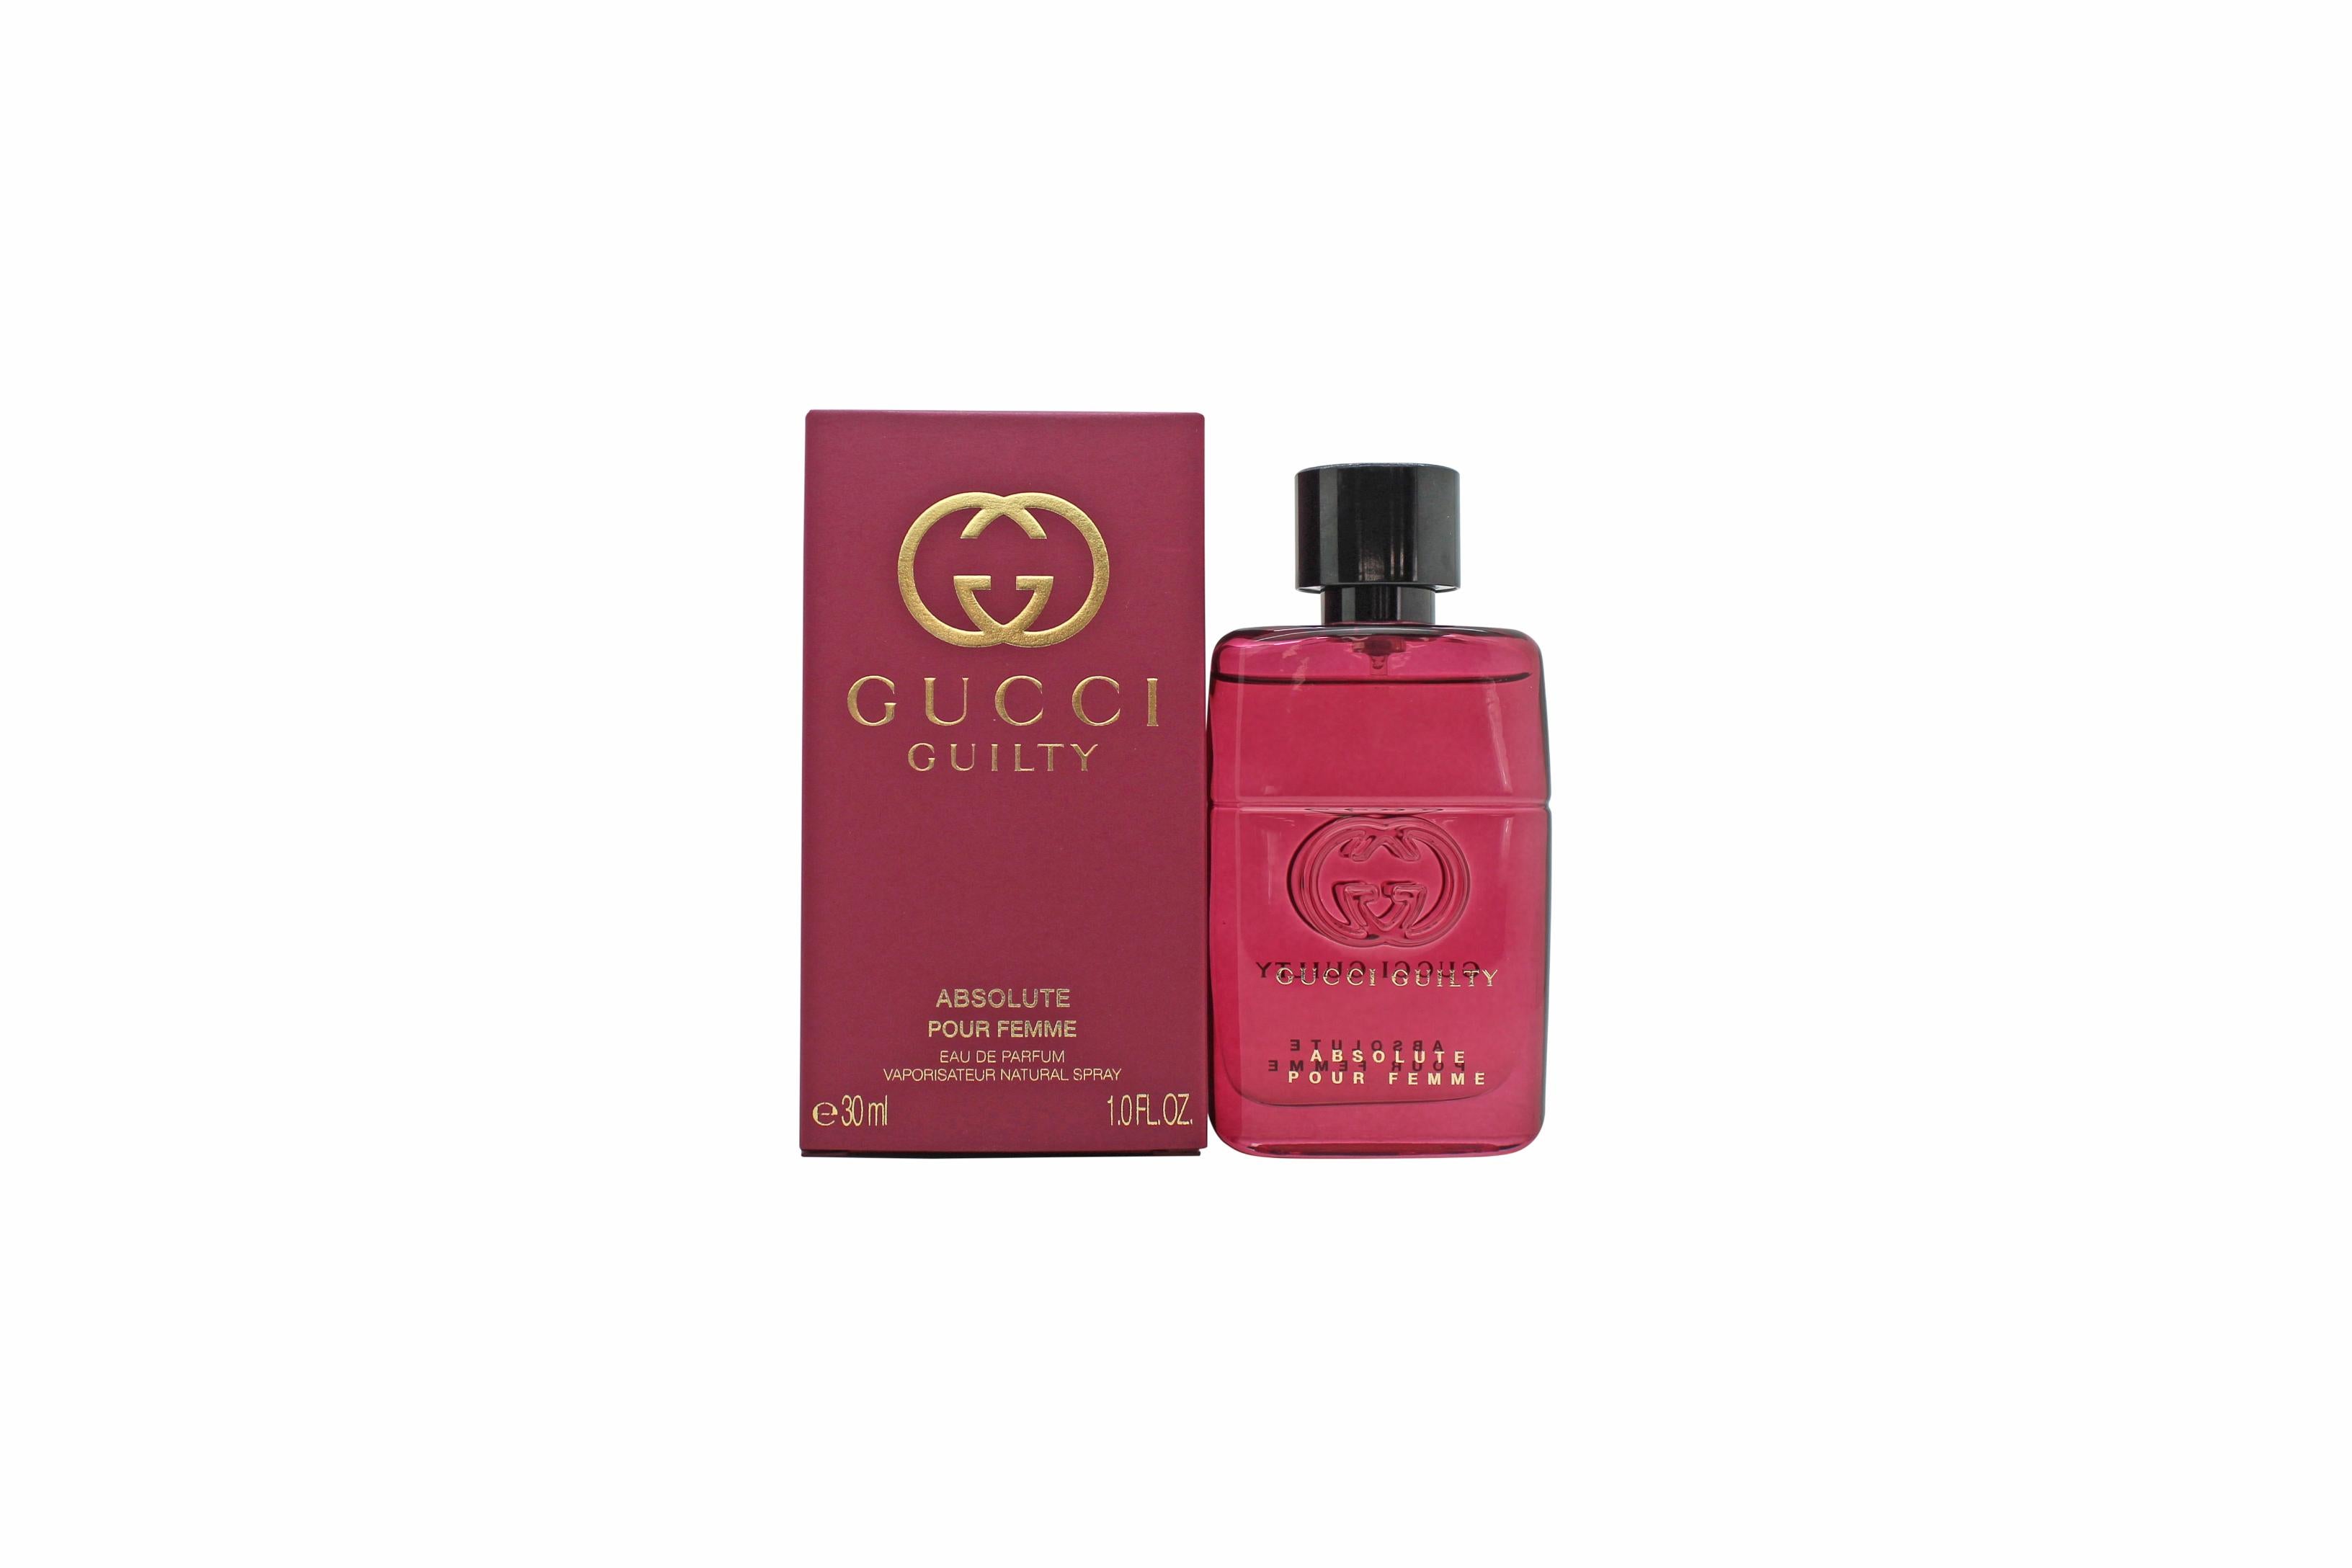 View Gucci Guilty Absolute Pour Femme Eau de Parfum 30ml Spray information